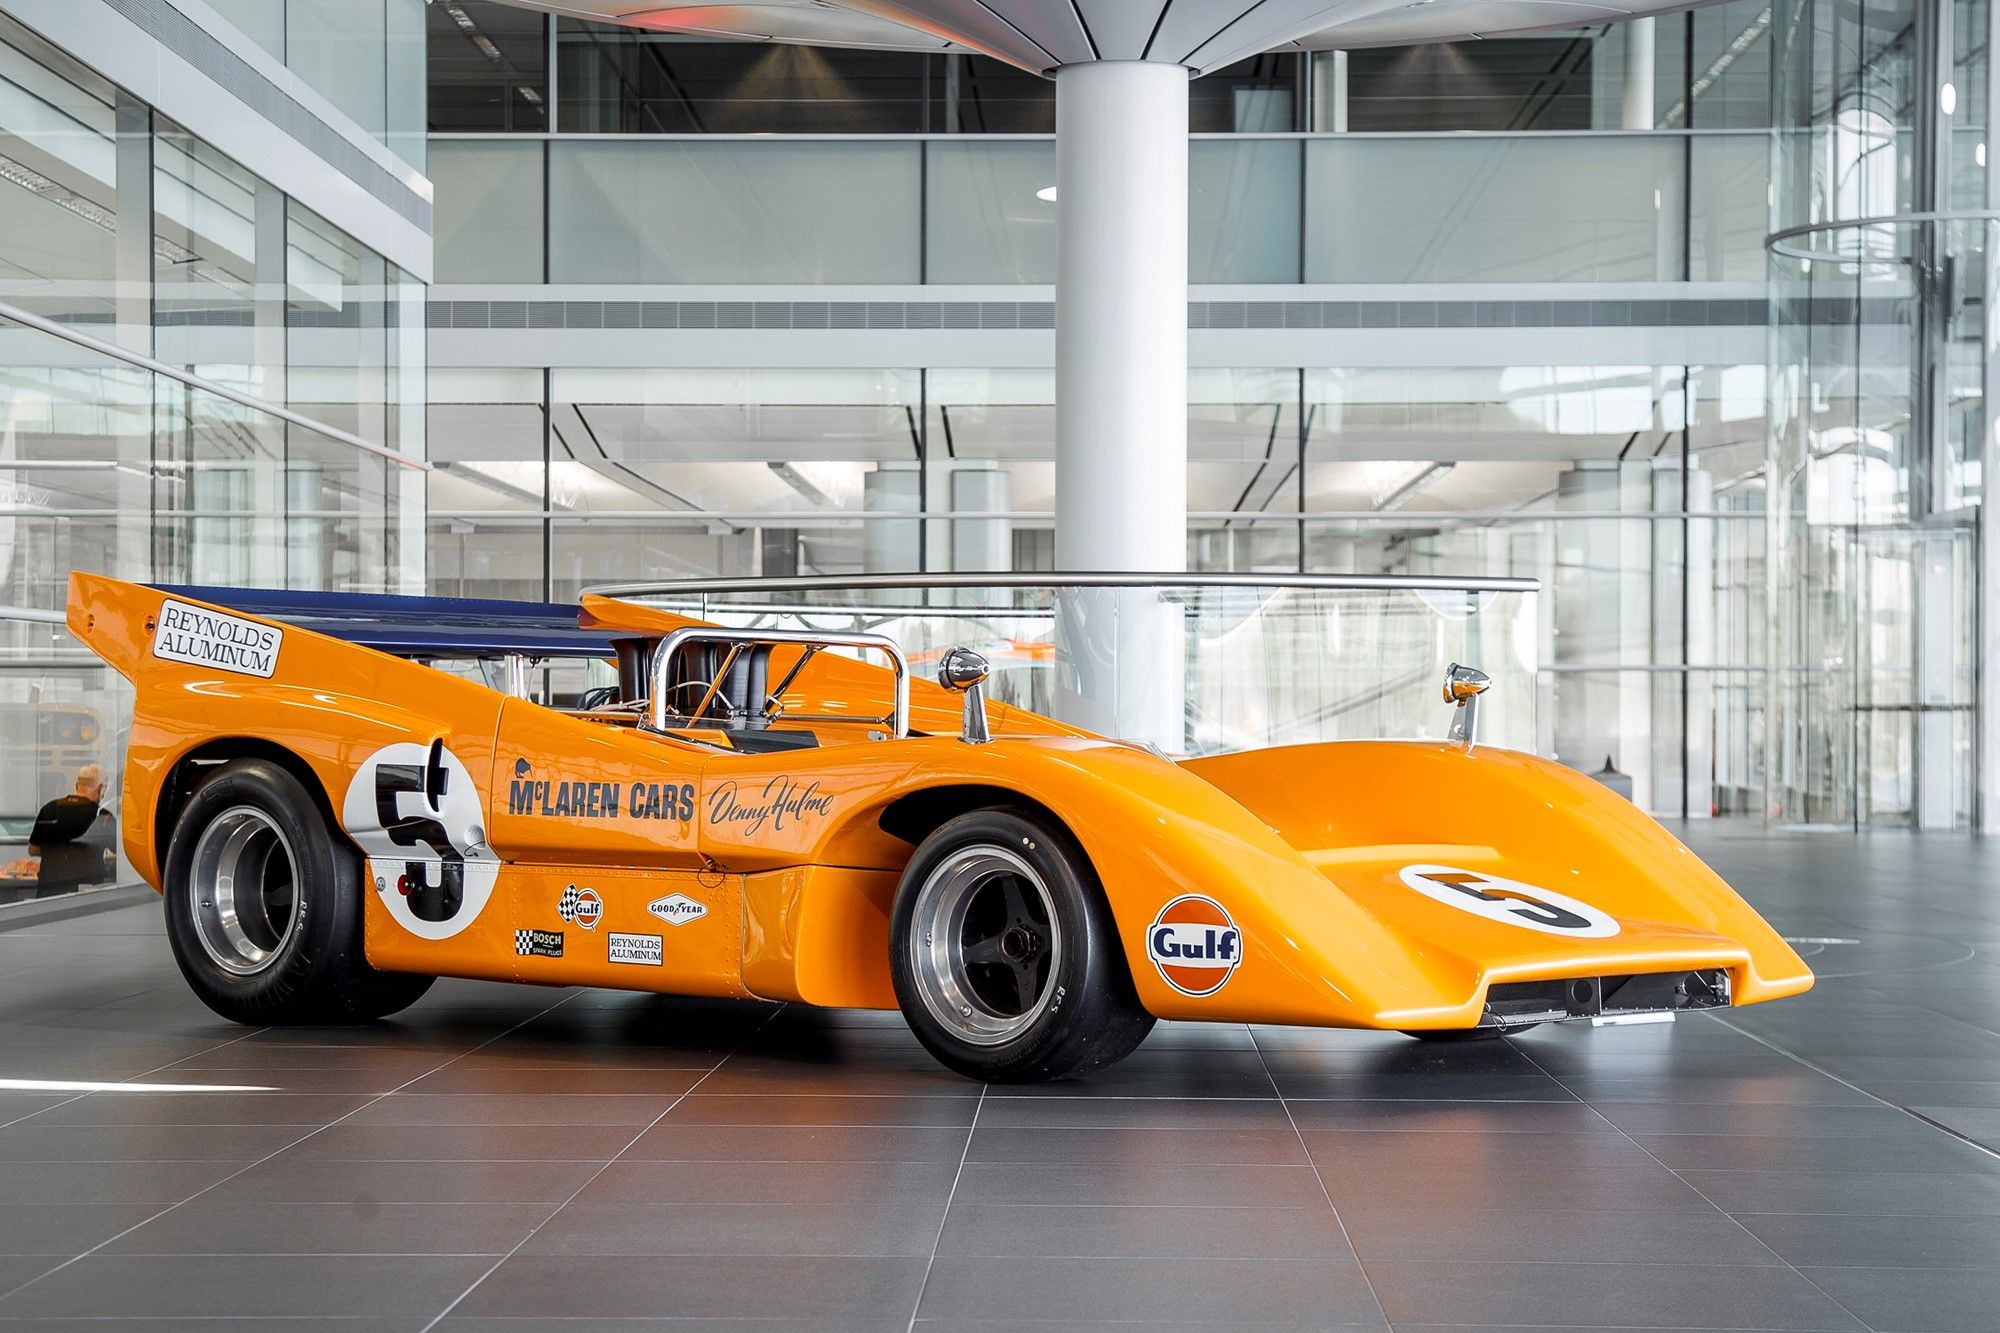 An Image Of A Yellow McLaren Race Car